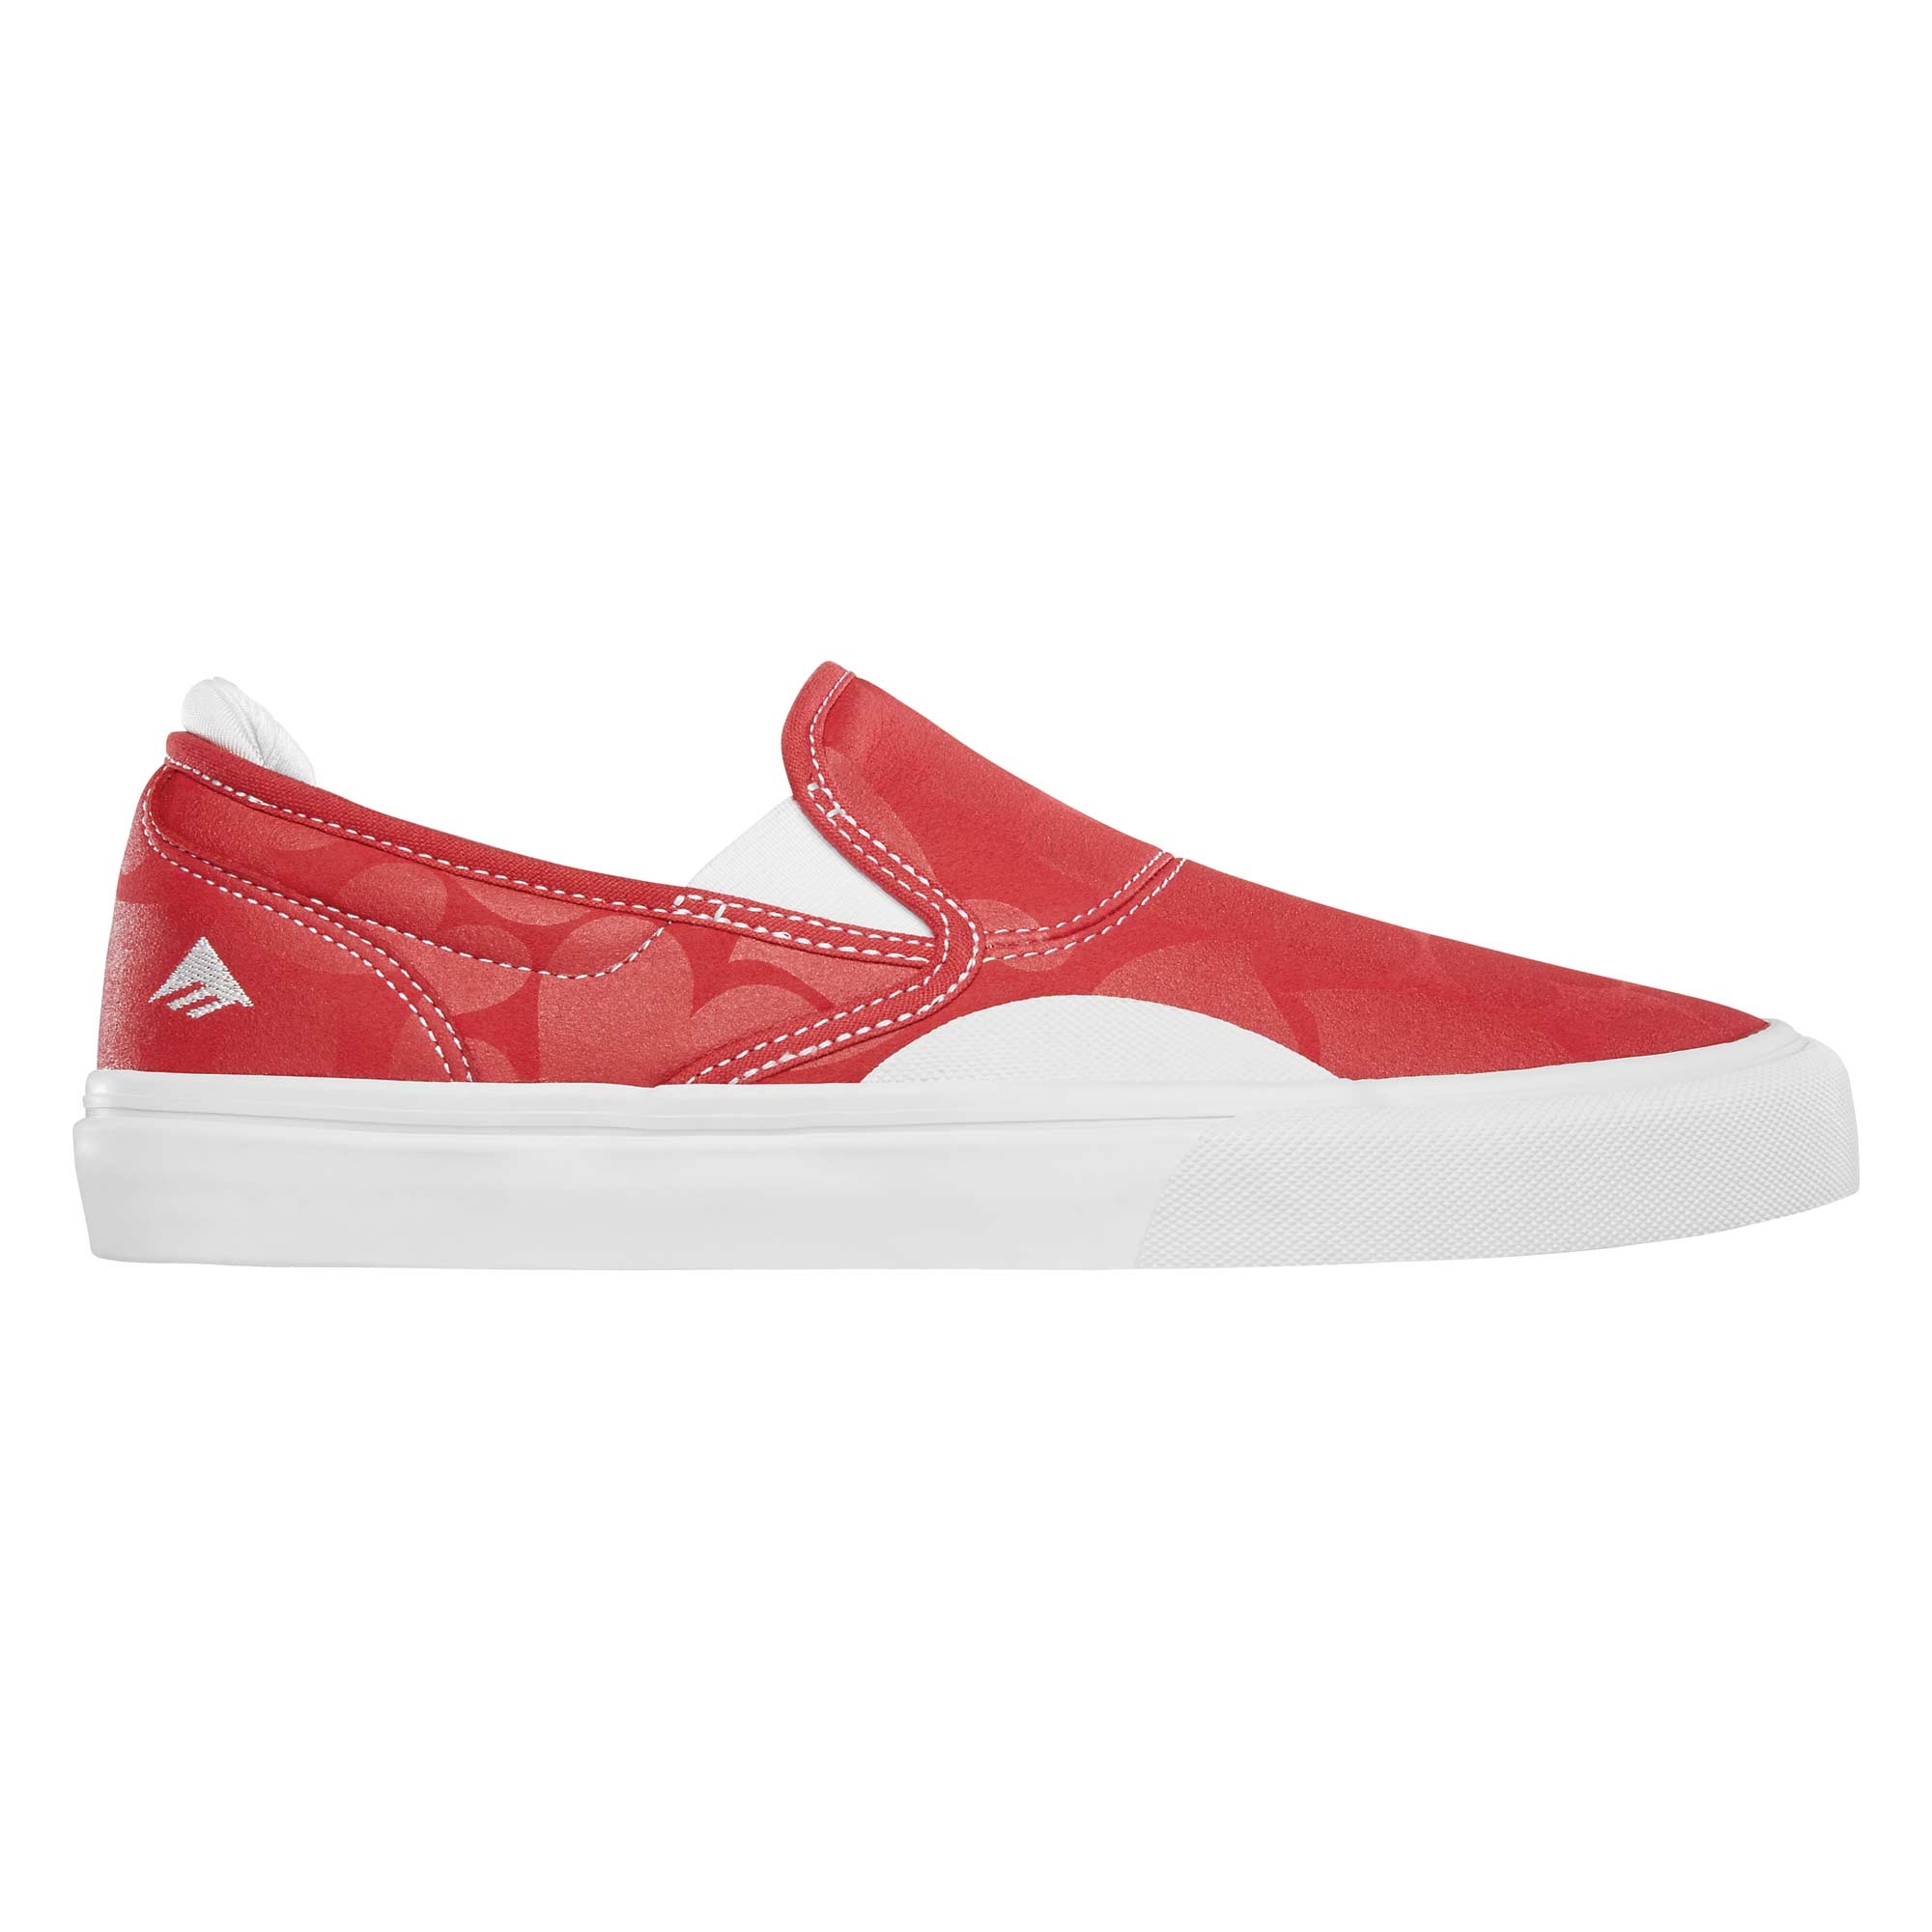 EMERICA Shoe WINO G6 SLIP-ON red/whi red/white